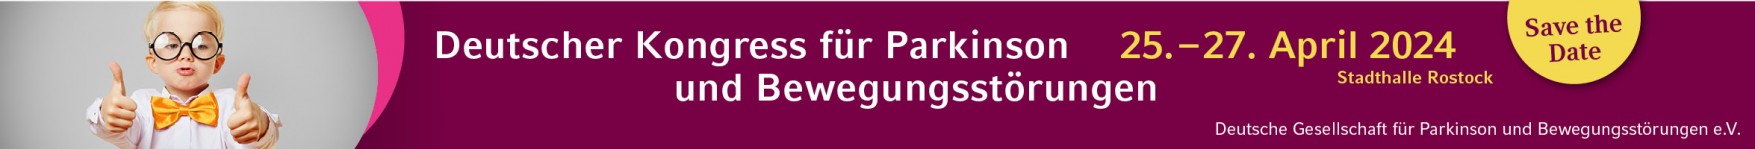 Deutscher Kongress für Parkinson und Bewegungsstörungen 2024